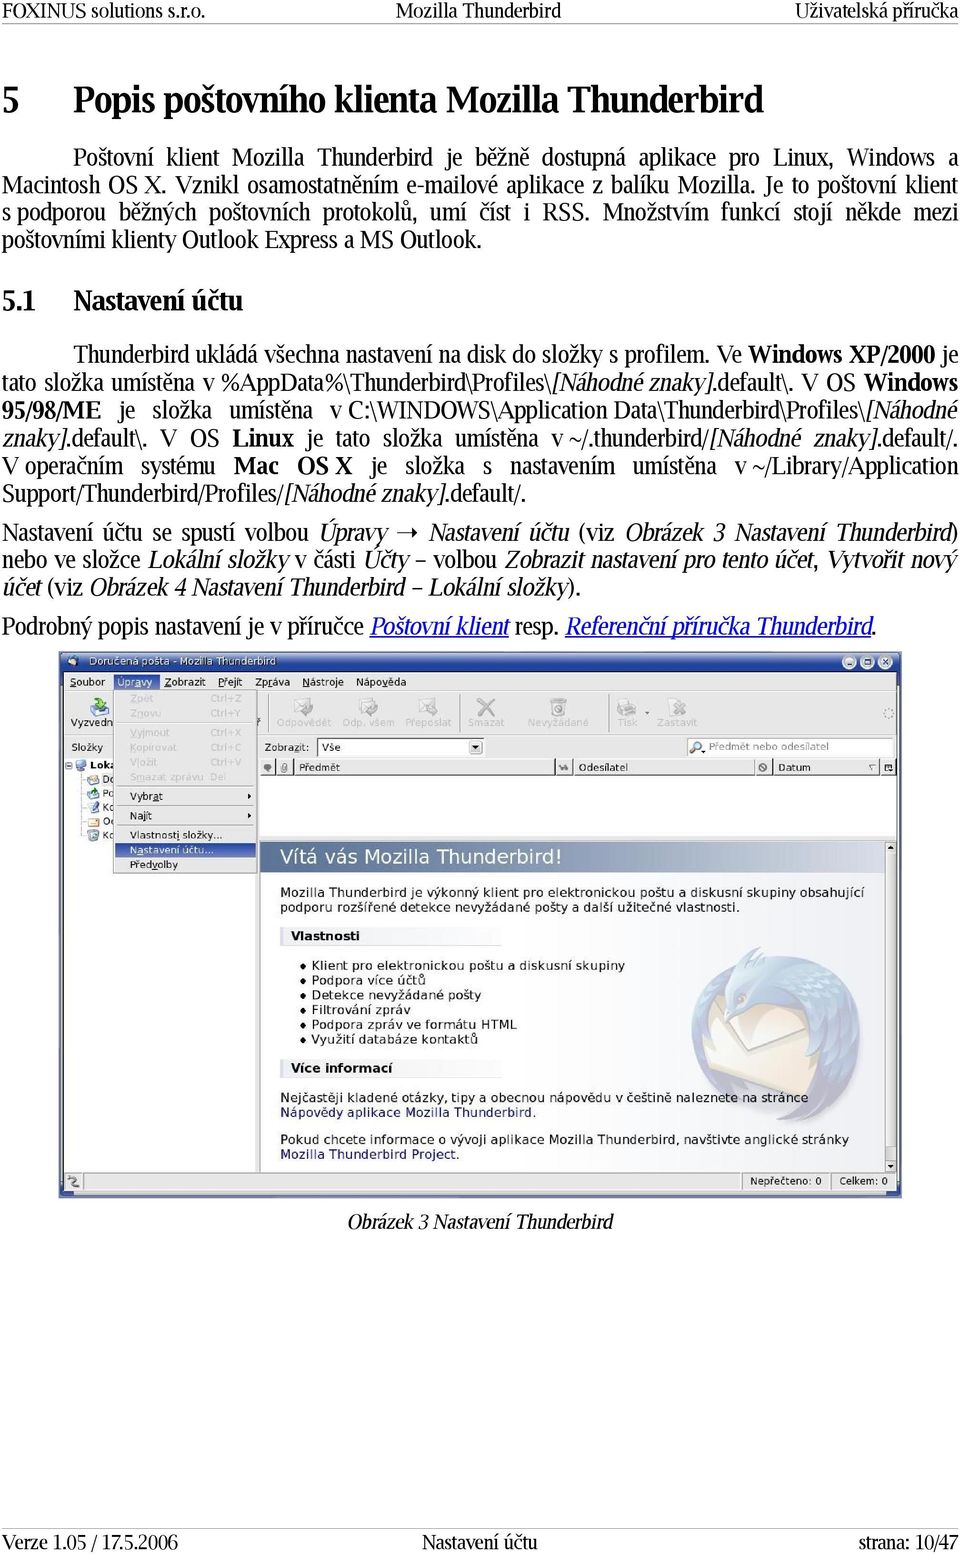 1 Nastavení účtu Thunderbird ukládá všechna nastavení na disk do složky s profilem. Ve Windows XP/2000 je tato složka umístěna v %AppData%\Thunderbird\Profiles\[Náhodné znaky].default\.